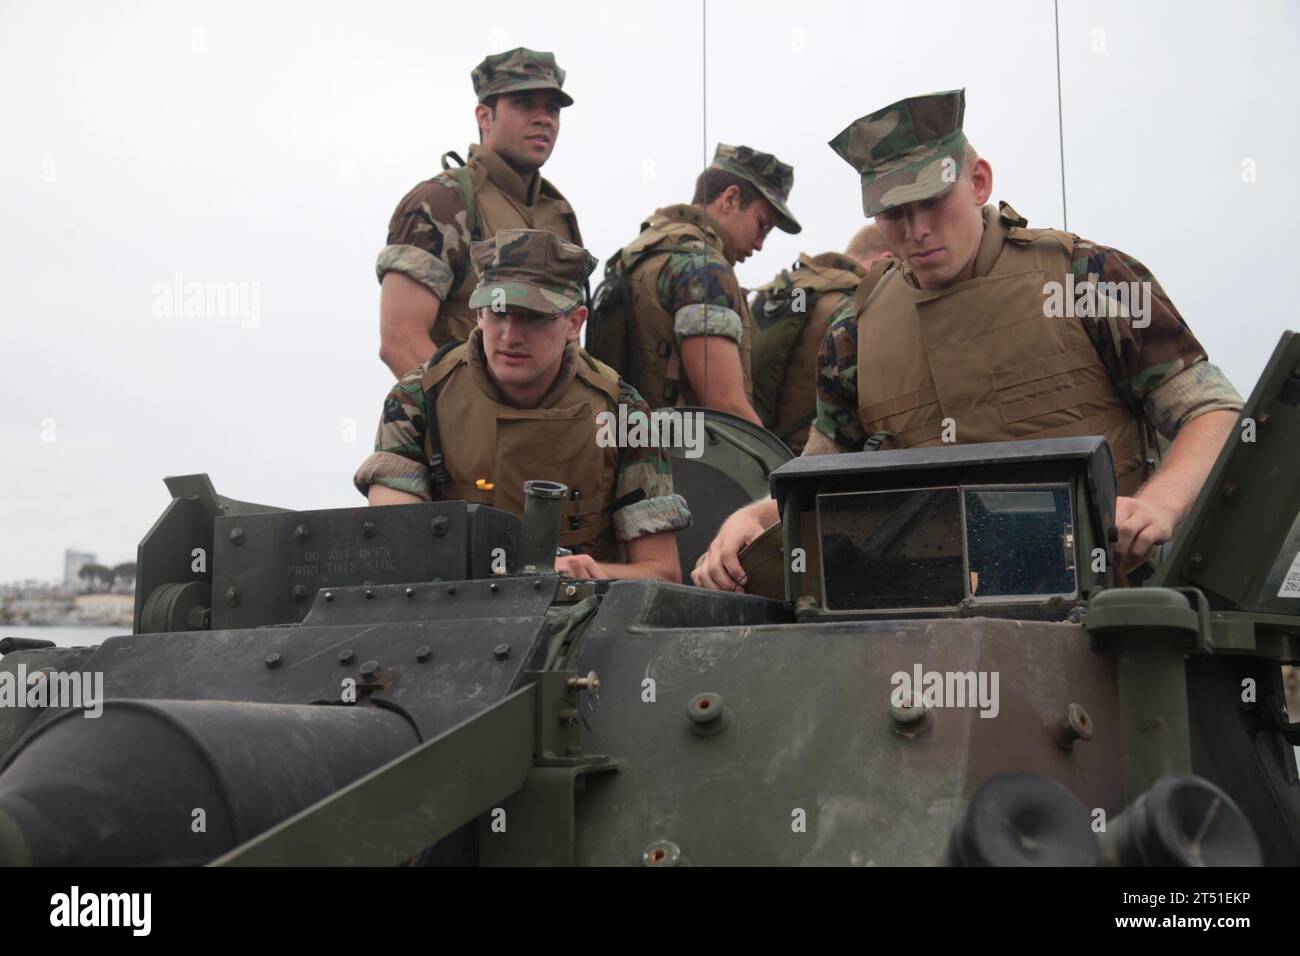 1006096770H-039 CAMP PENELTON, KALIF. (9. Juni 2010) Midshipmen der U.S. Naval Academy klettern in den Turm einer LAV-25, während die Marines der 1. Marine-Division in Camp Pendleton, Kalifornien, verschiedene Ausrüstungen einführen Midshipmen lernen die verschiedenen Fahrzeuge und ihre Fähigkeiten im Rahmen von Protramid kennen, einem Programm, das sie über das Marine Corps informieren soll. (U.S. Marine Corps Stockfoto